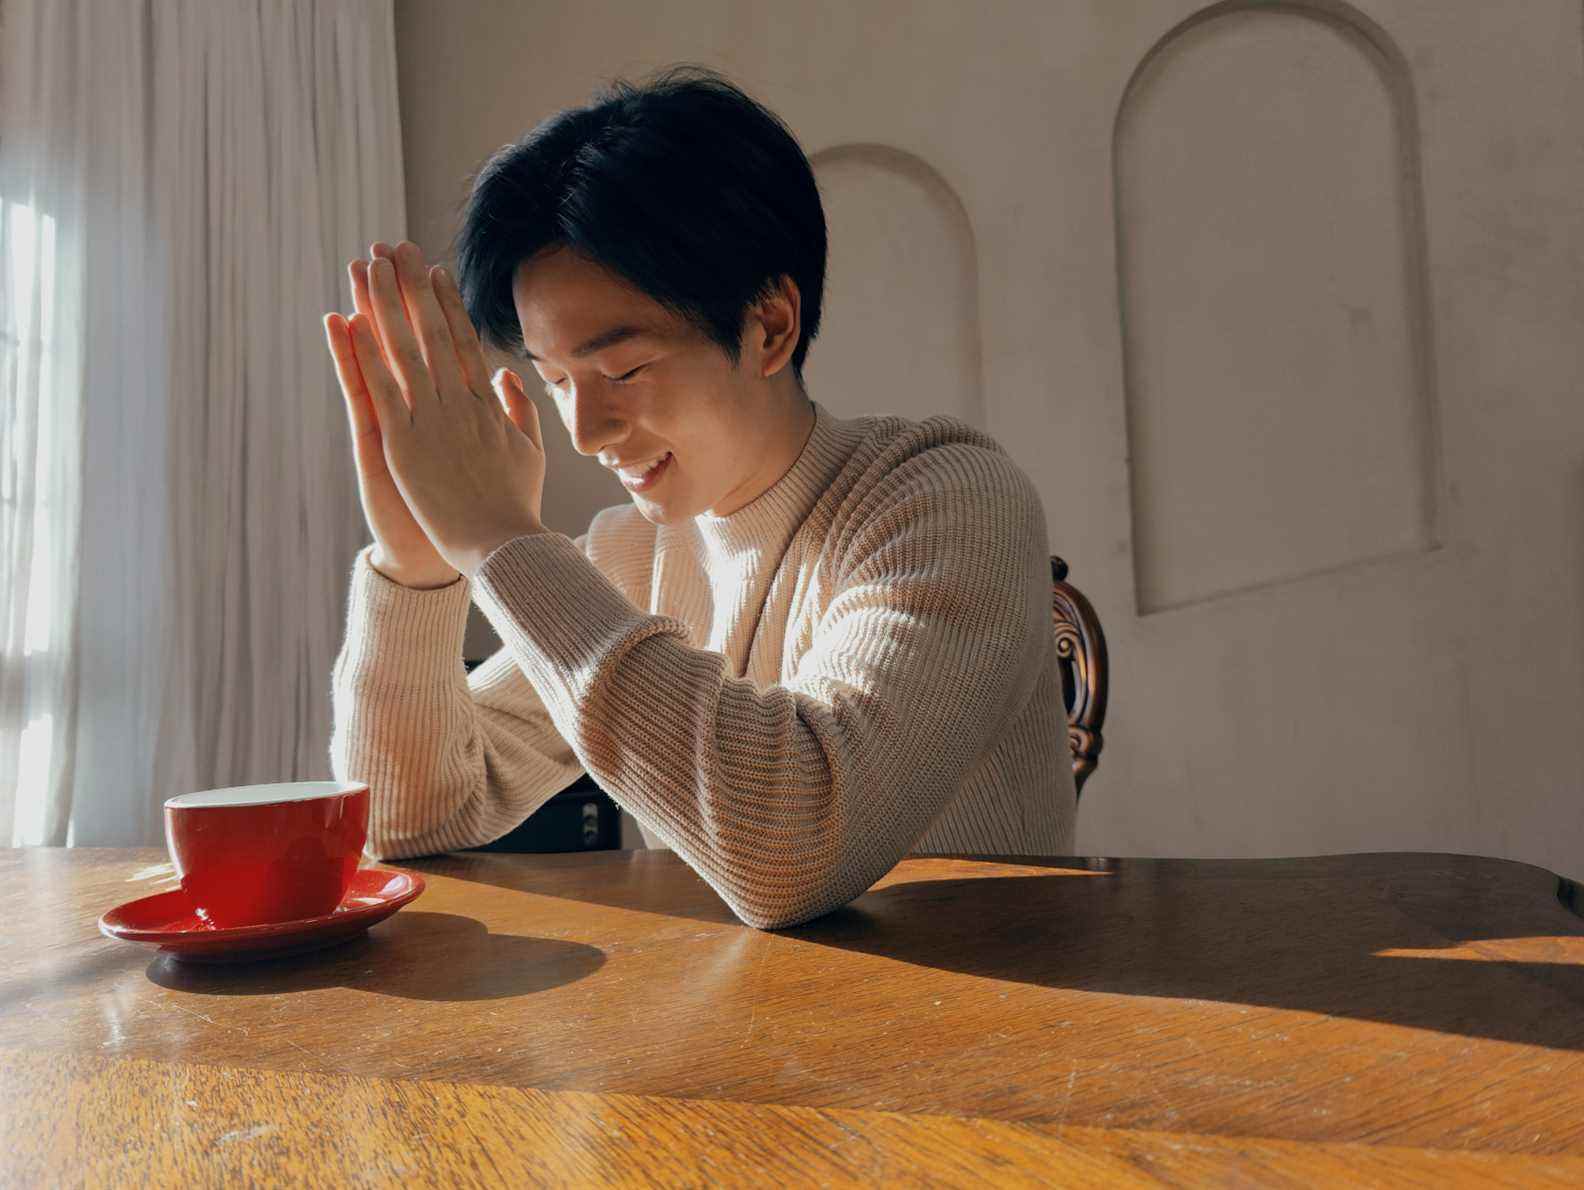 Un exemple d'image OnePlus 10 Pro d'une personne assise à une table avec une tasse de café